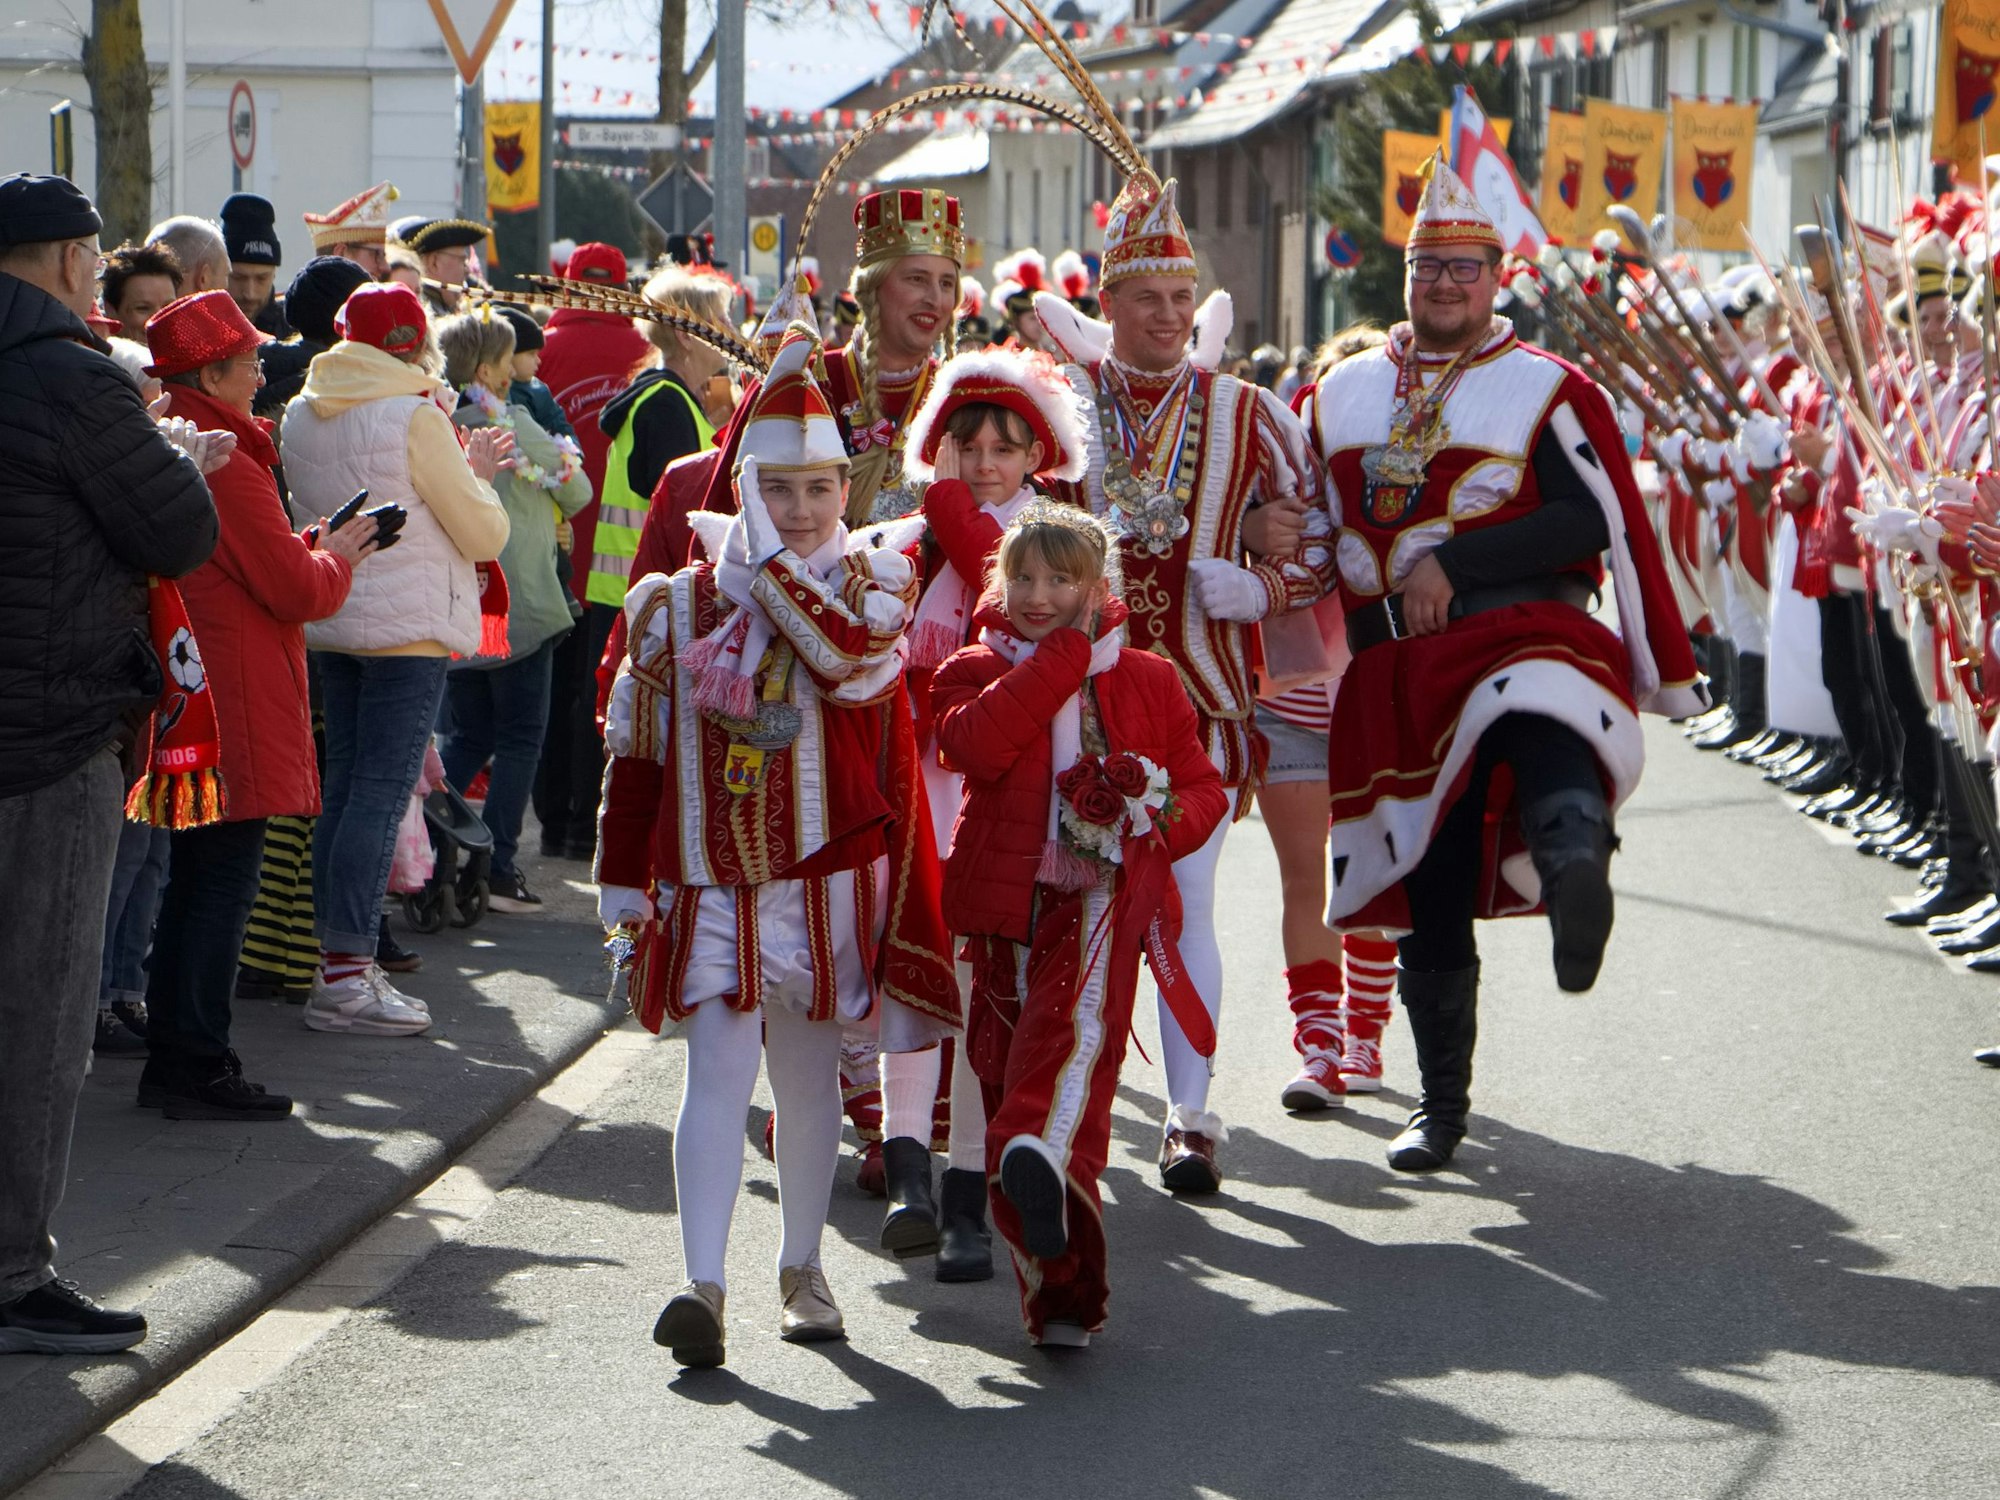 Der Aufmarsch des hohen karnevalistischen Adels entlang des Zuges ist ein weiterer Höhepunkt im Dom-Escher Karneval.